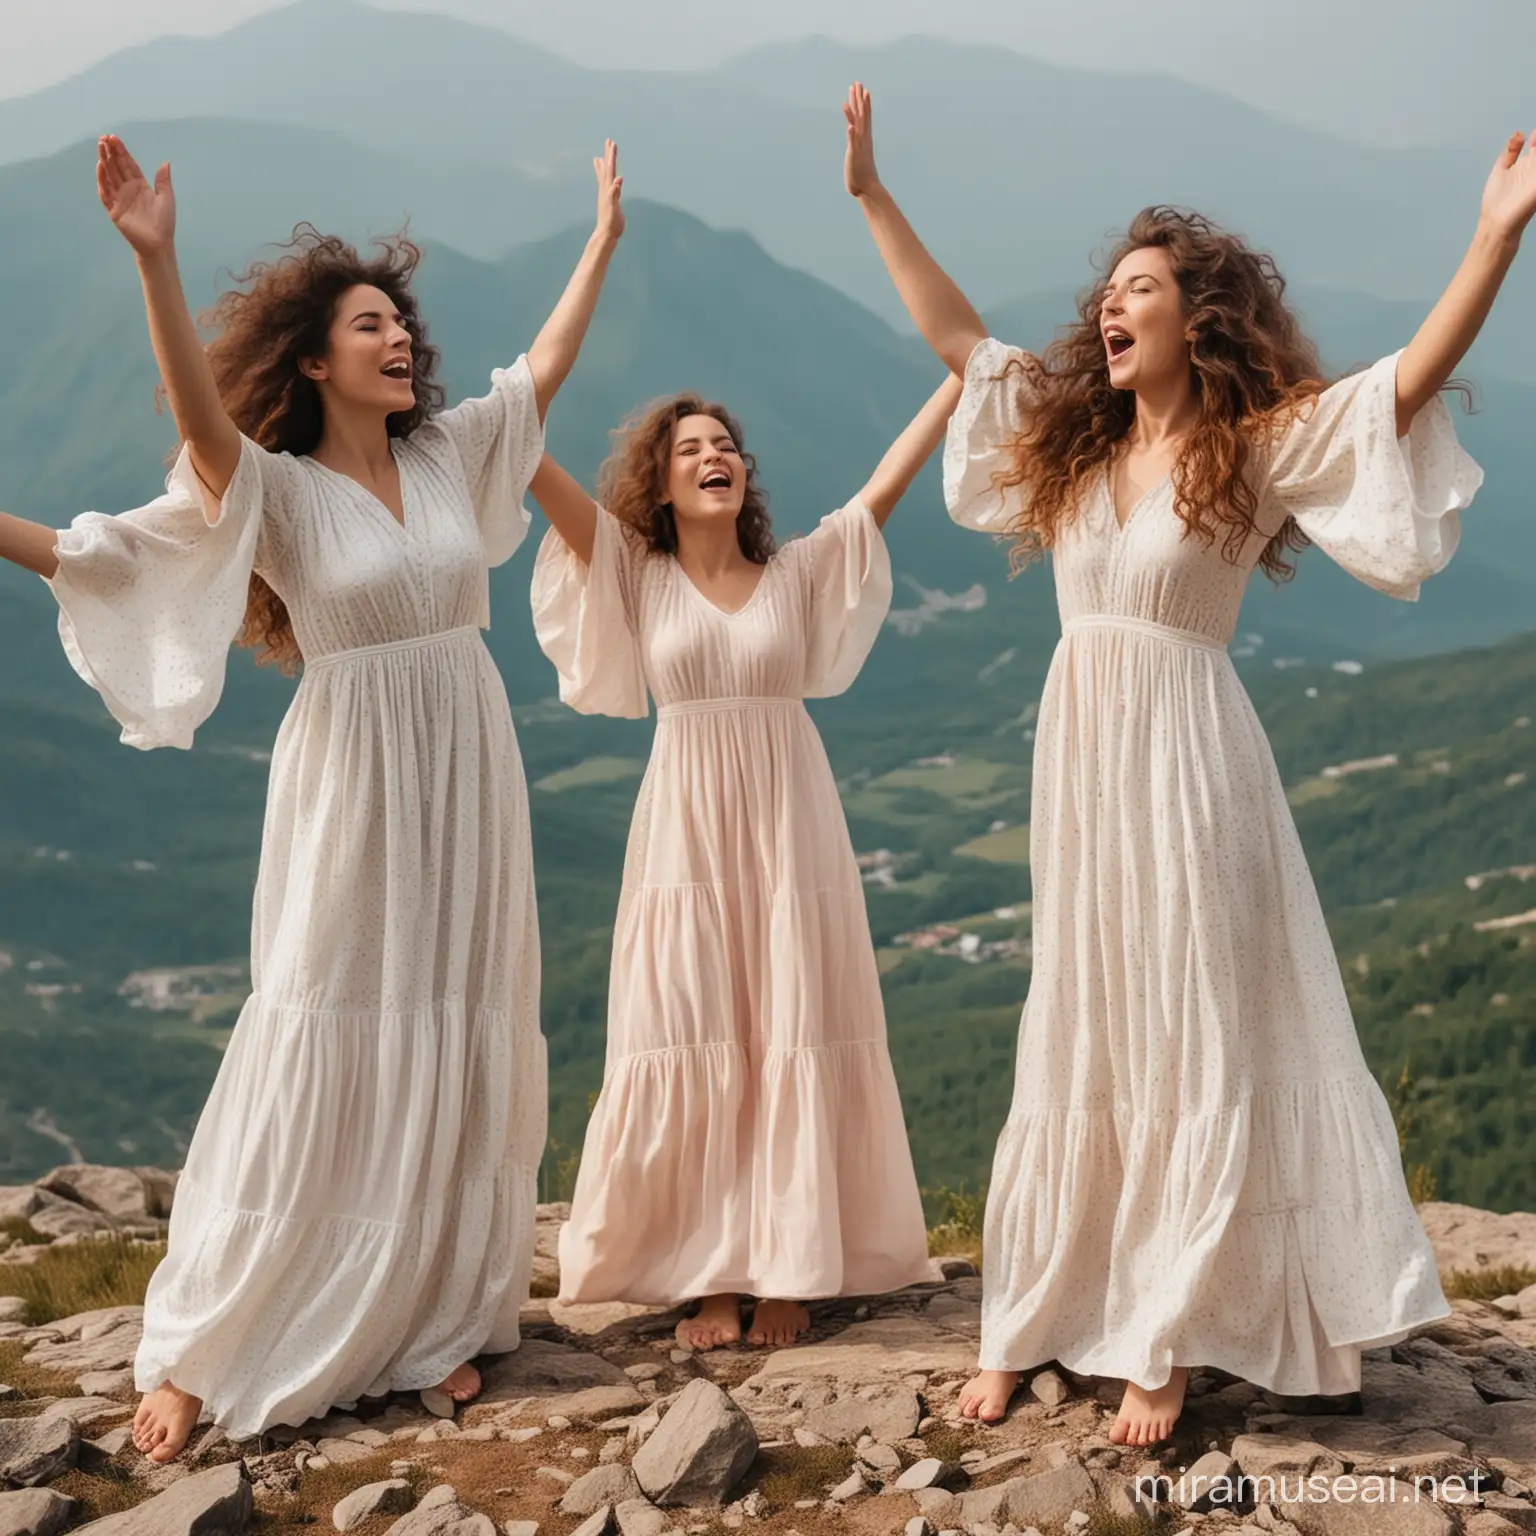 Две женщины красивые в красивых платьях громко поют и тянут руки вверх.Женщины с красивыми пышными волосами.Женщины поют на вершине горы.